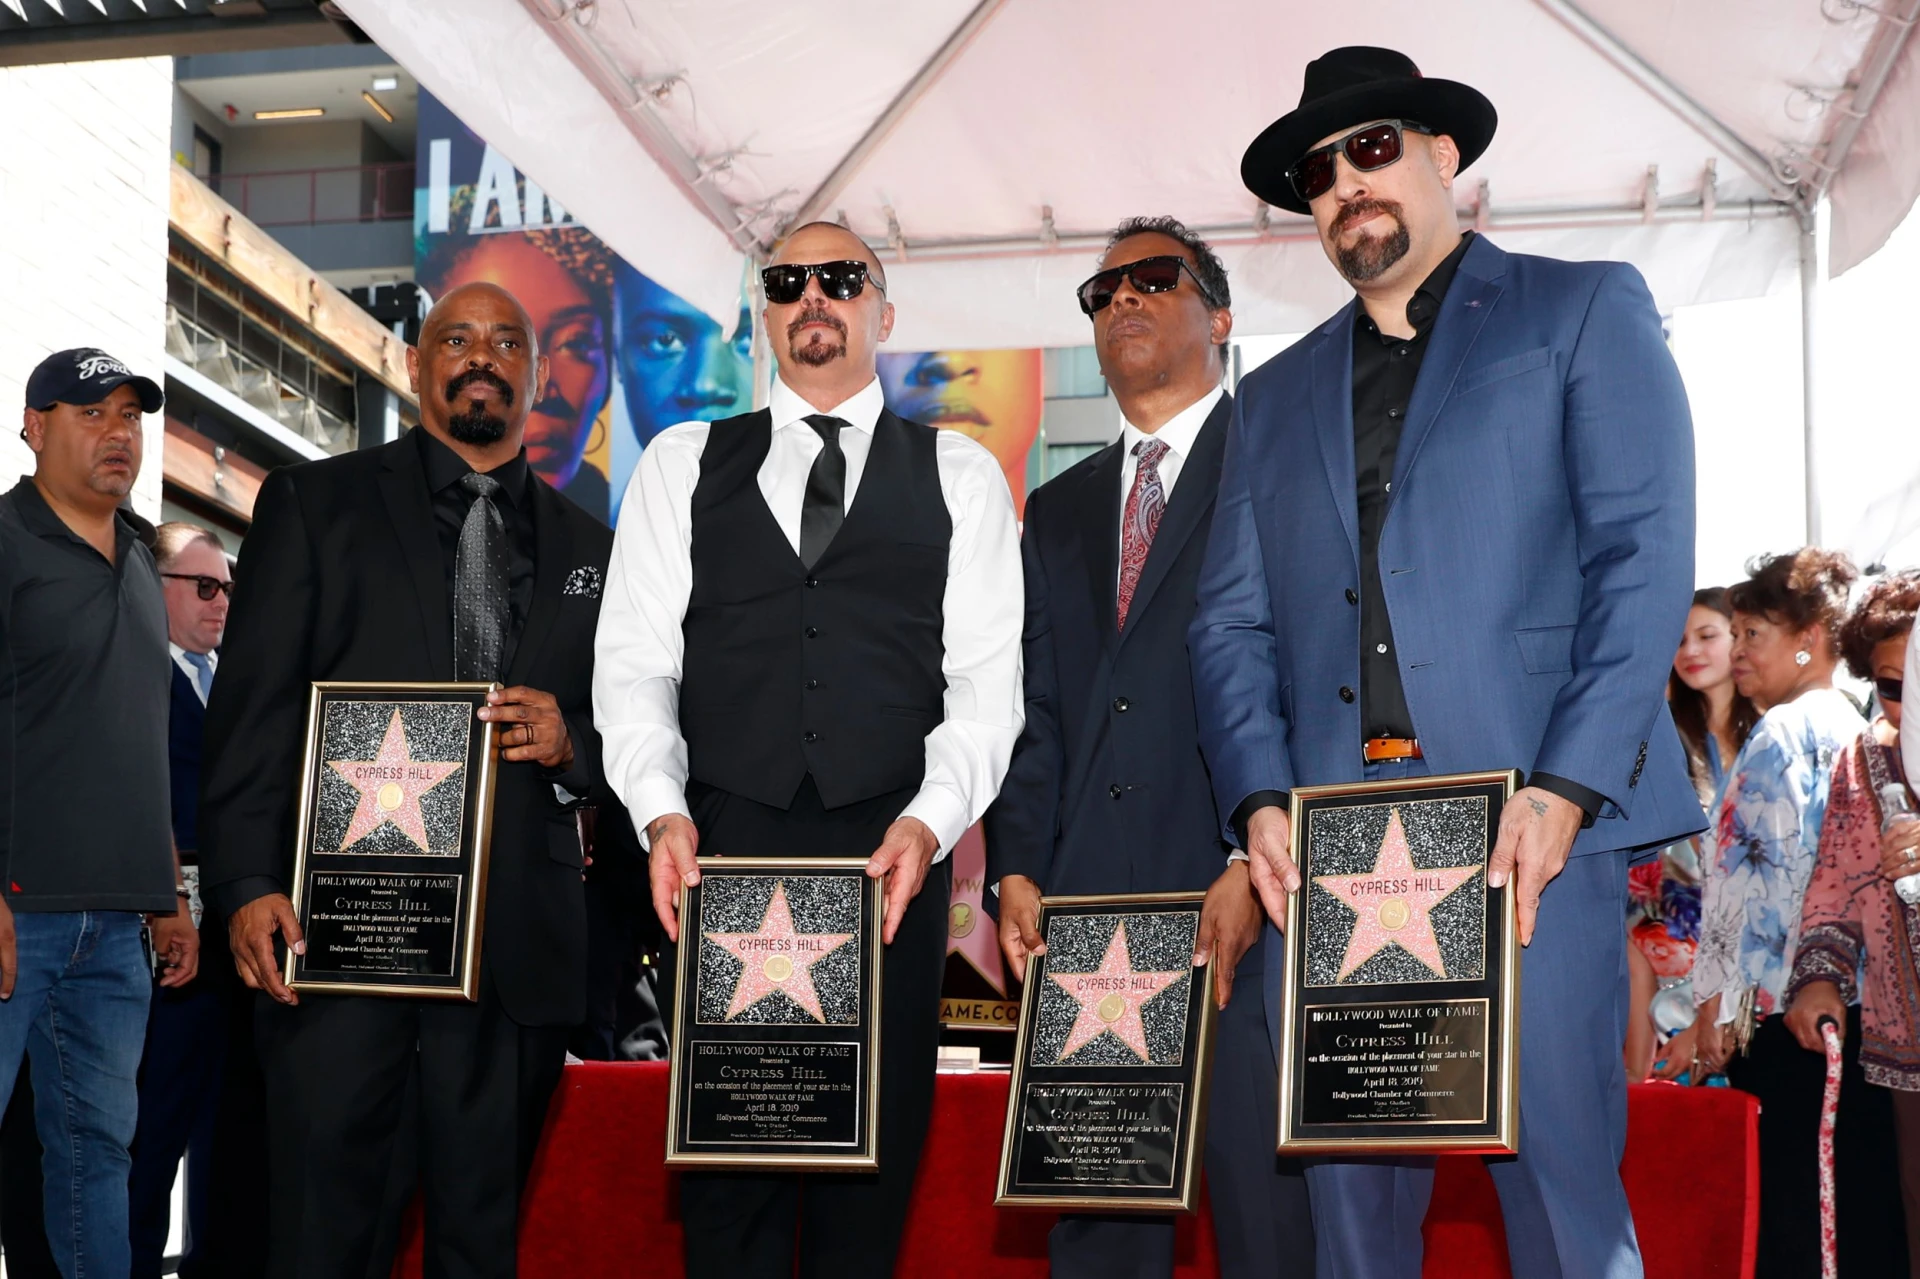 Cypress Hill със звезда на Алеята на славата в Холивуд